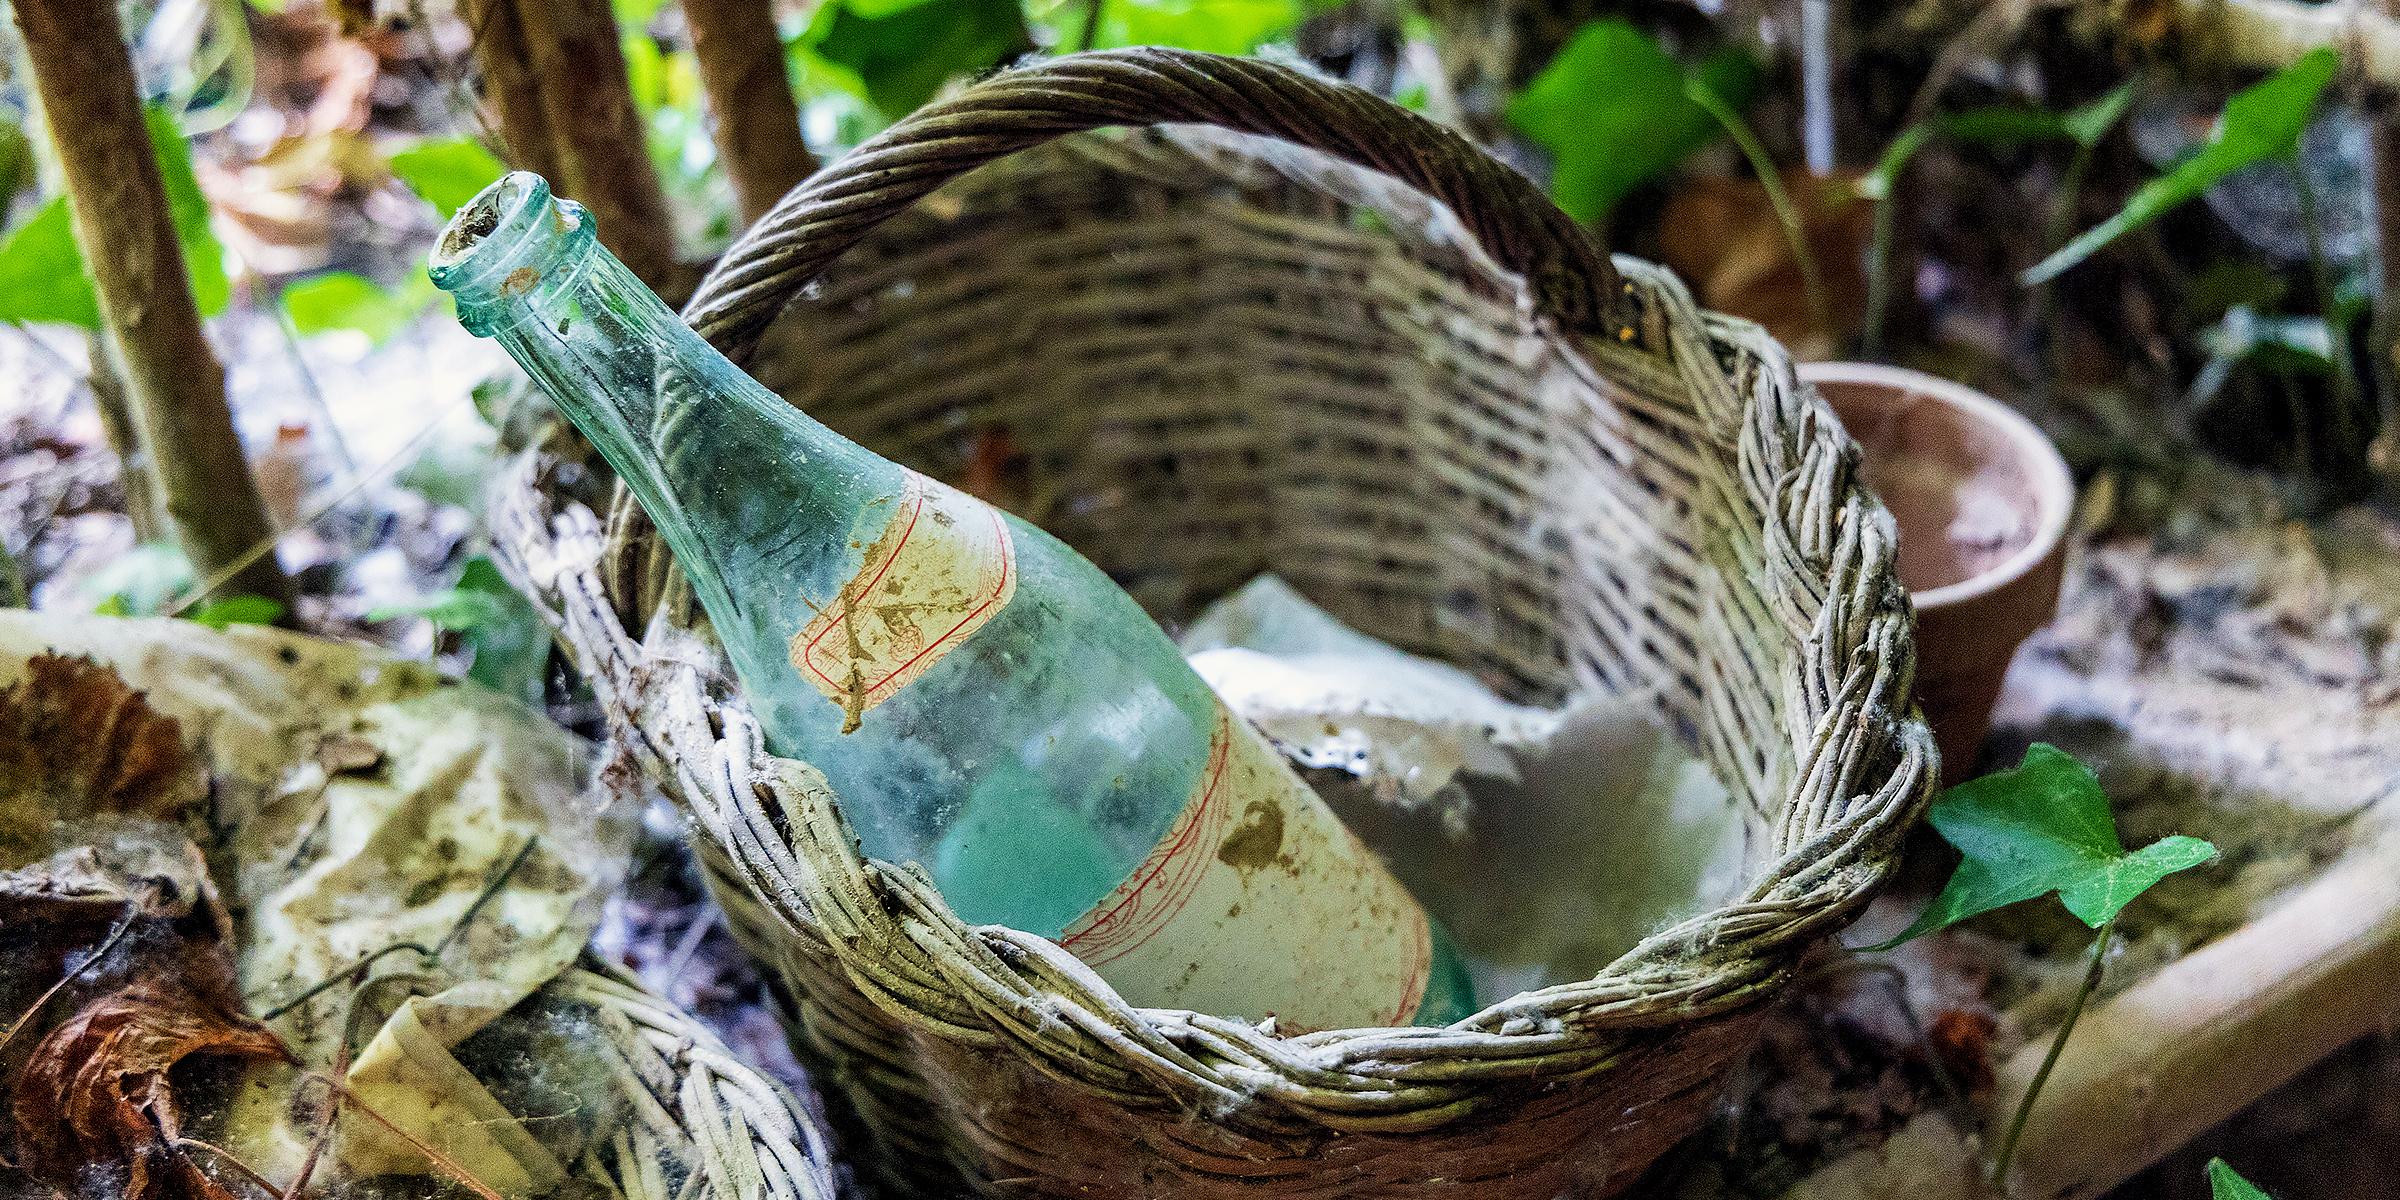 Une vieille bouteille en verre dans un panier | Source : Getty Images